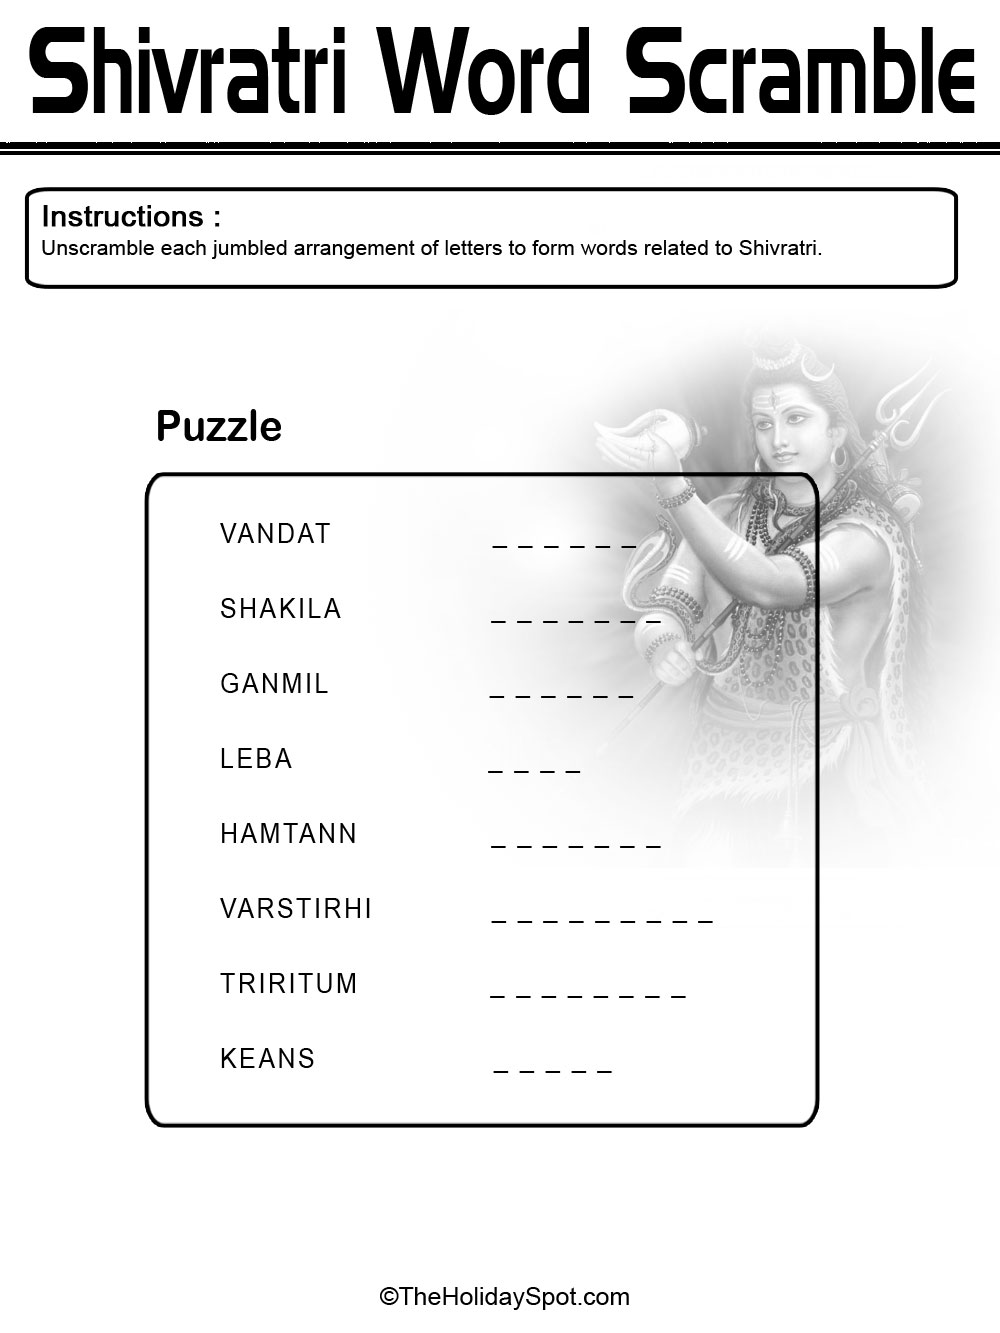 Shivratri Word Scramble Puzzle - Black and White